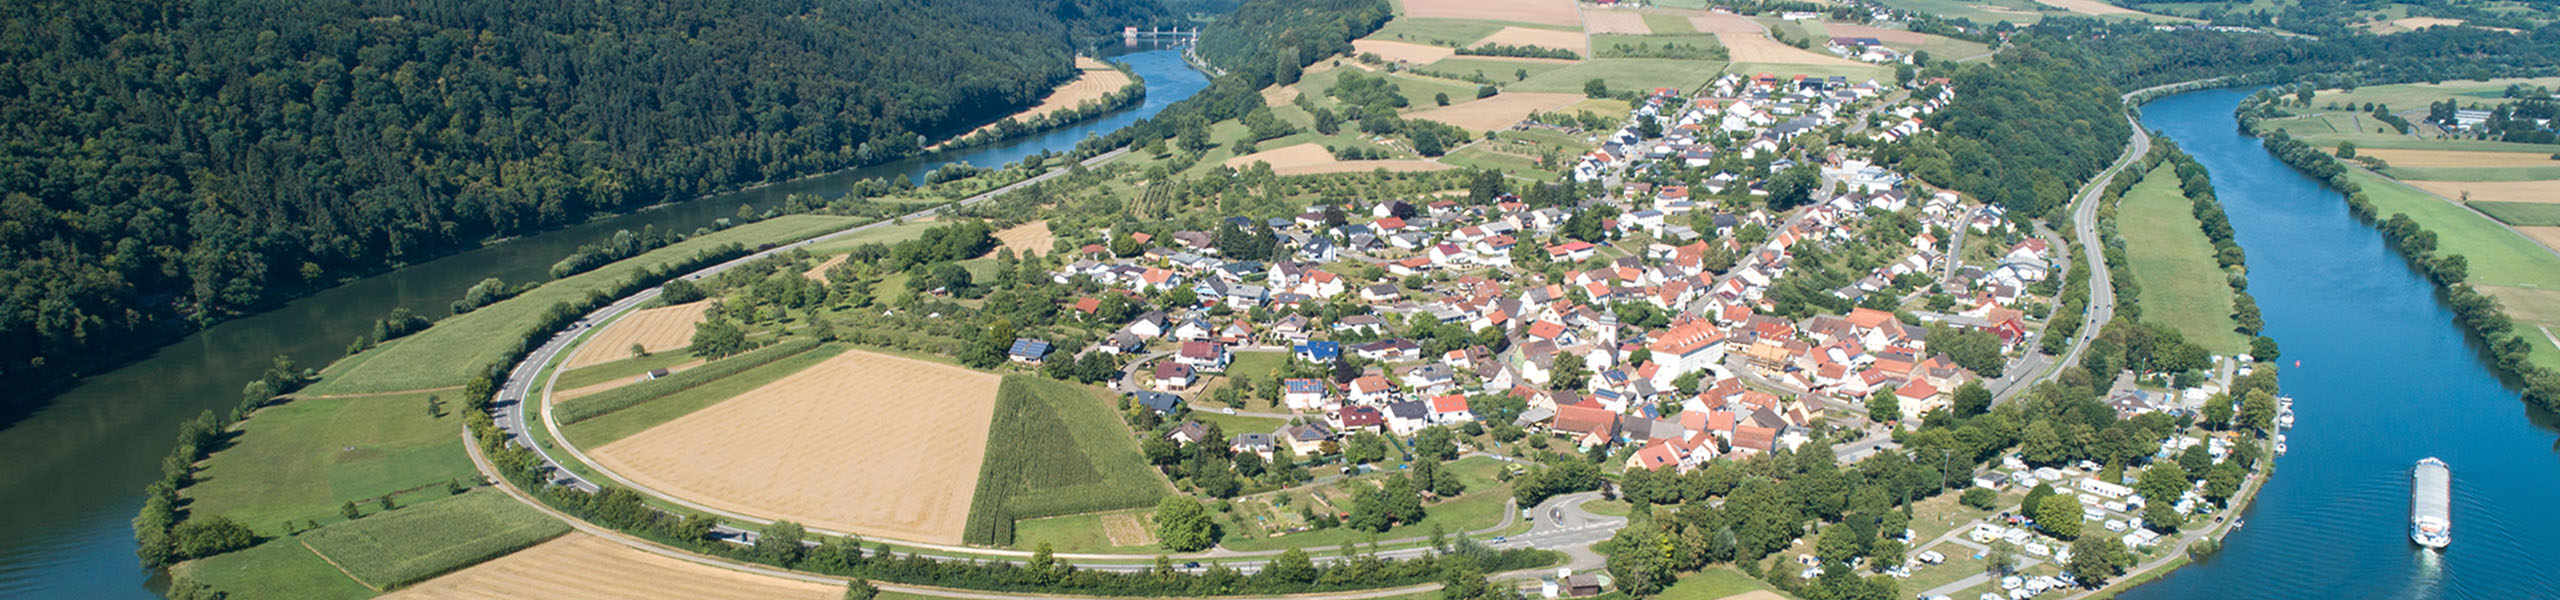 50 Jahre Neckar-Odenwald-Kreis - Impressum